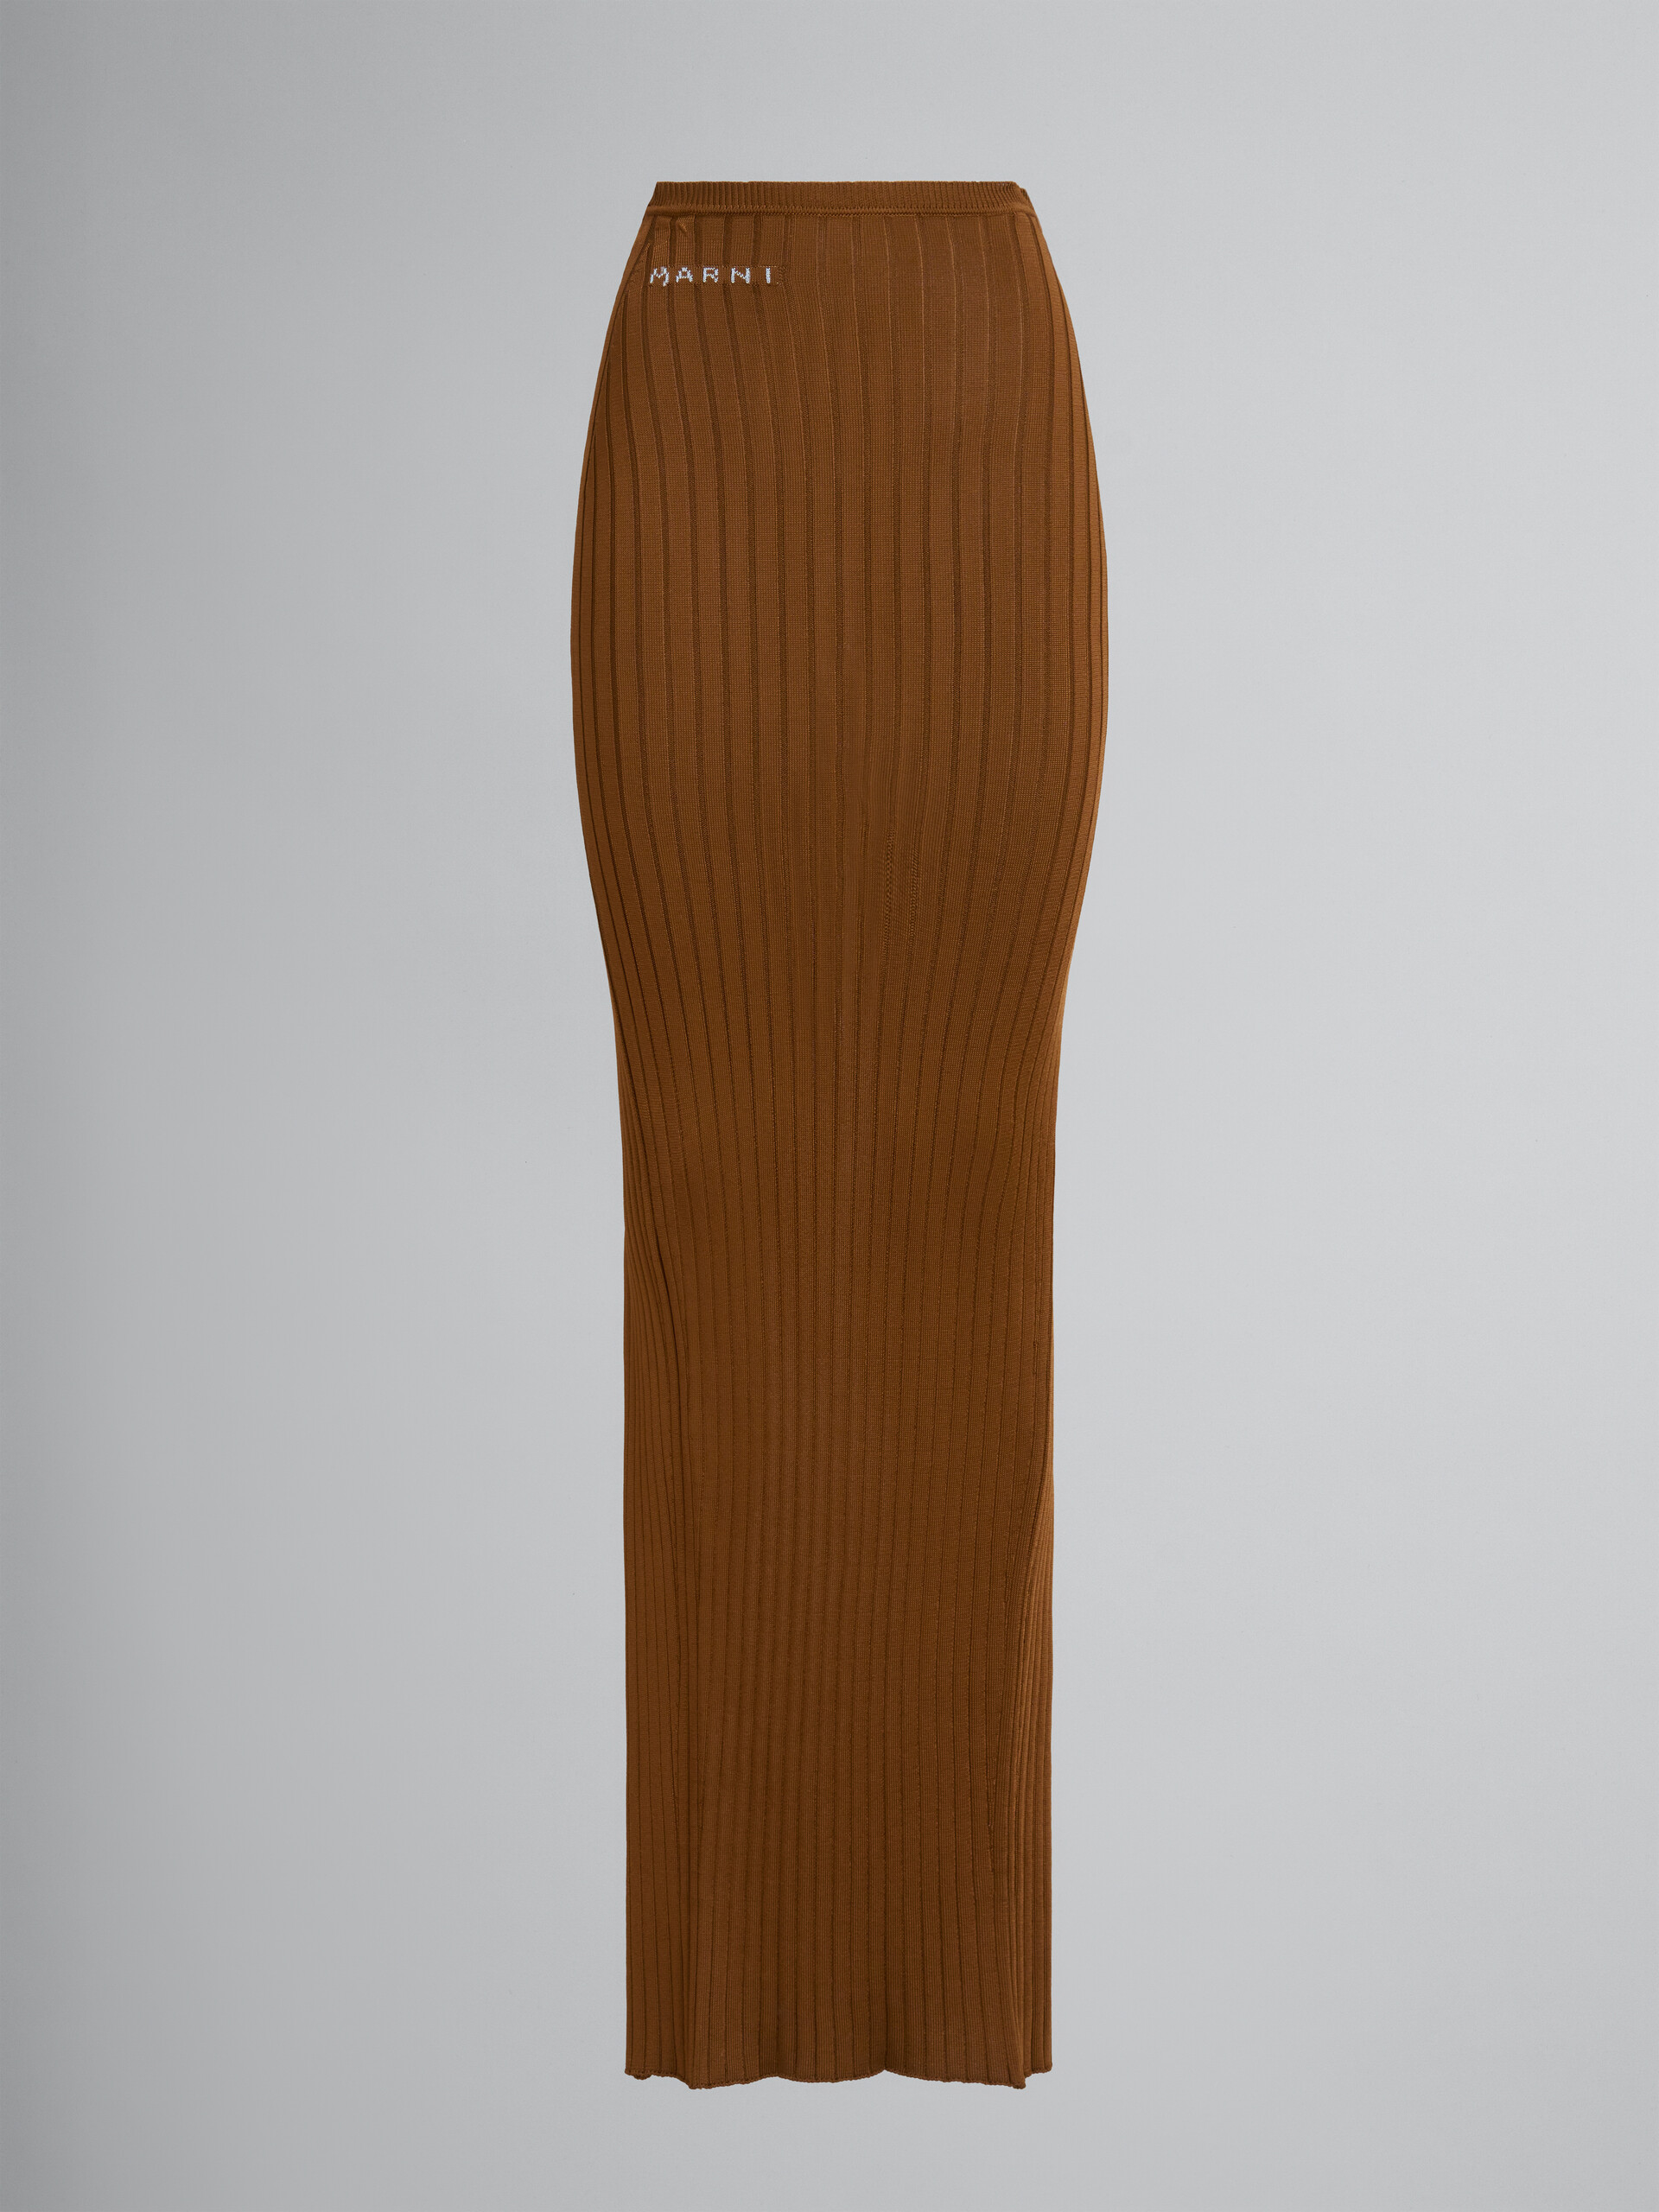 Maxifalda marrón de viscosa acanalada - Faldas - Image 1